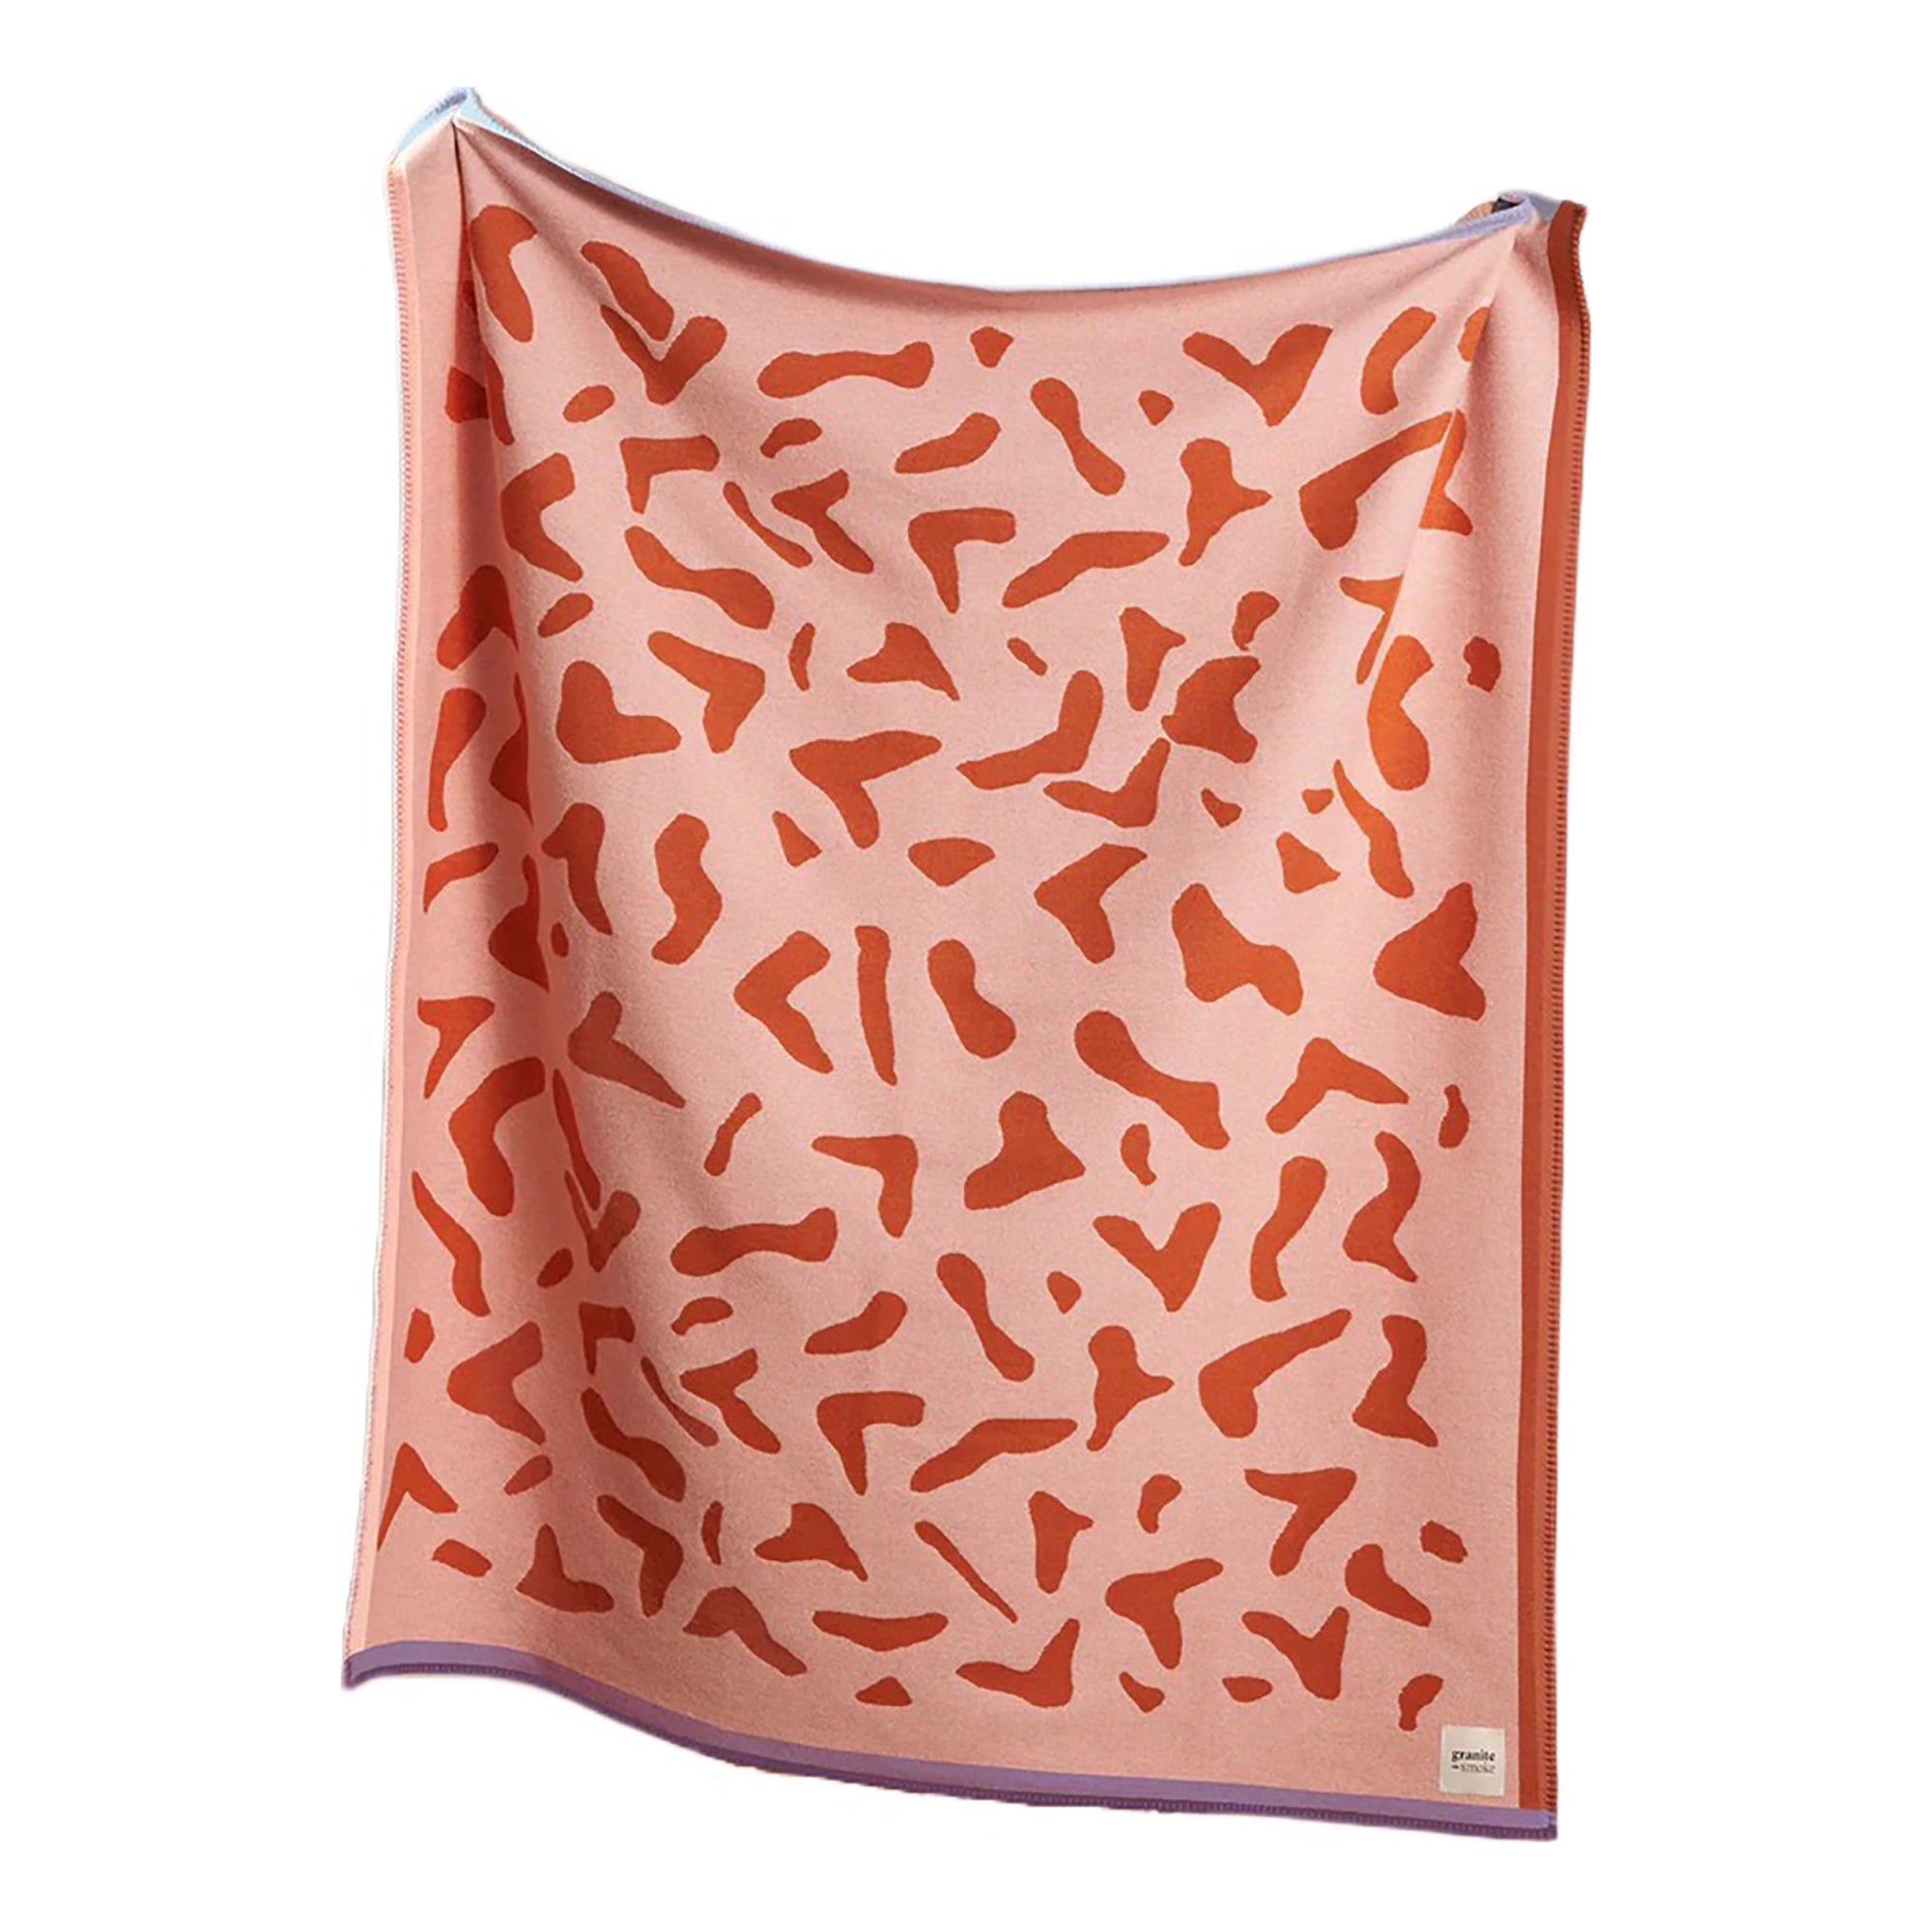 Scatter _ orange + pink _ wall hanging